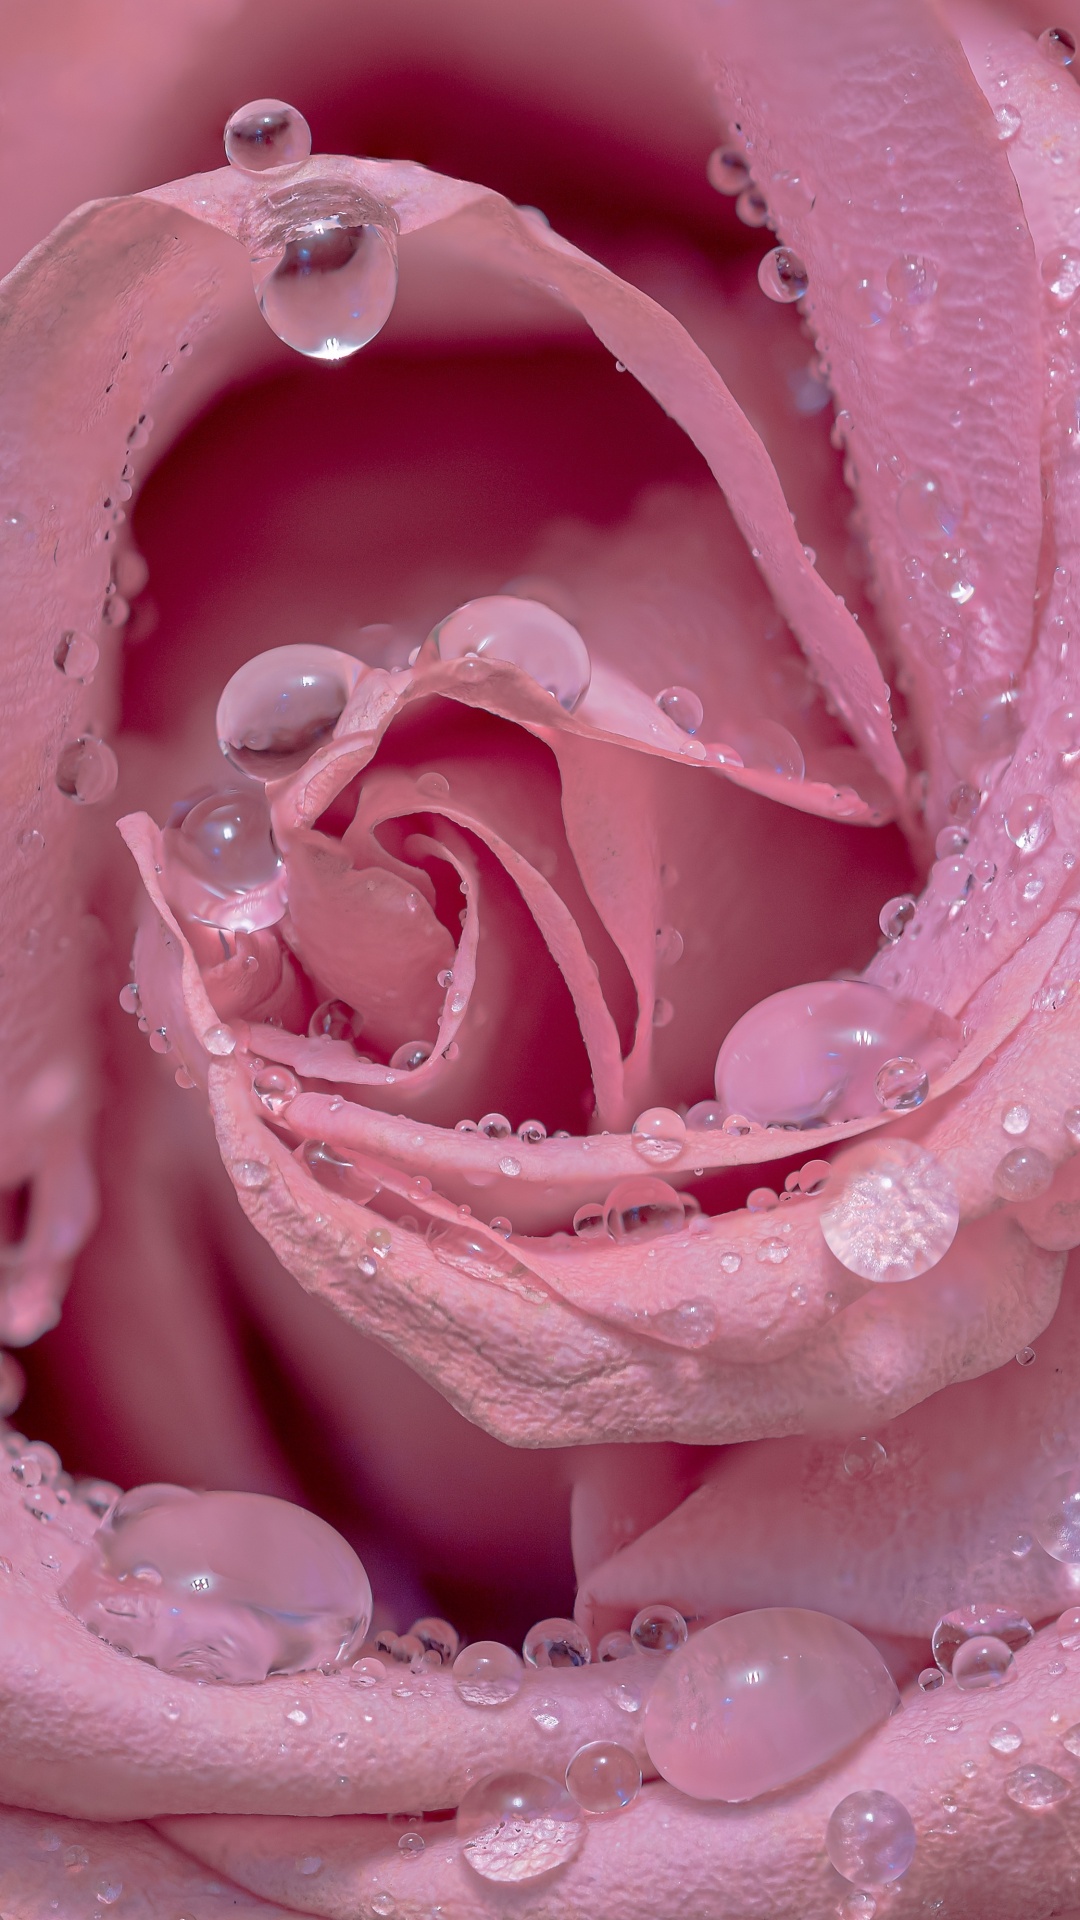 Pink Roses Wallpaper 4K Floral Background 5760